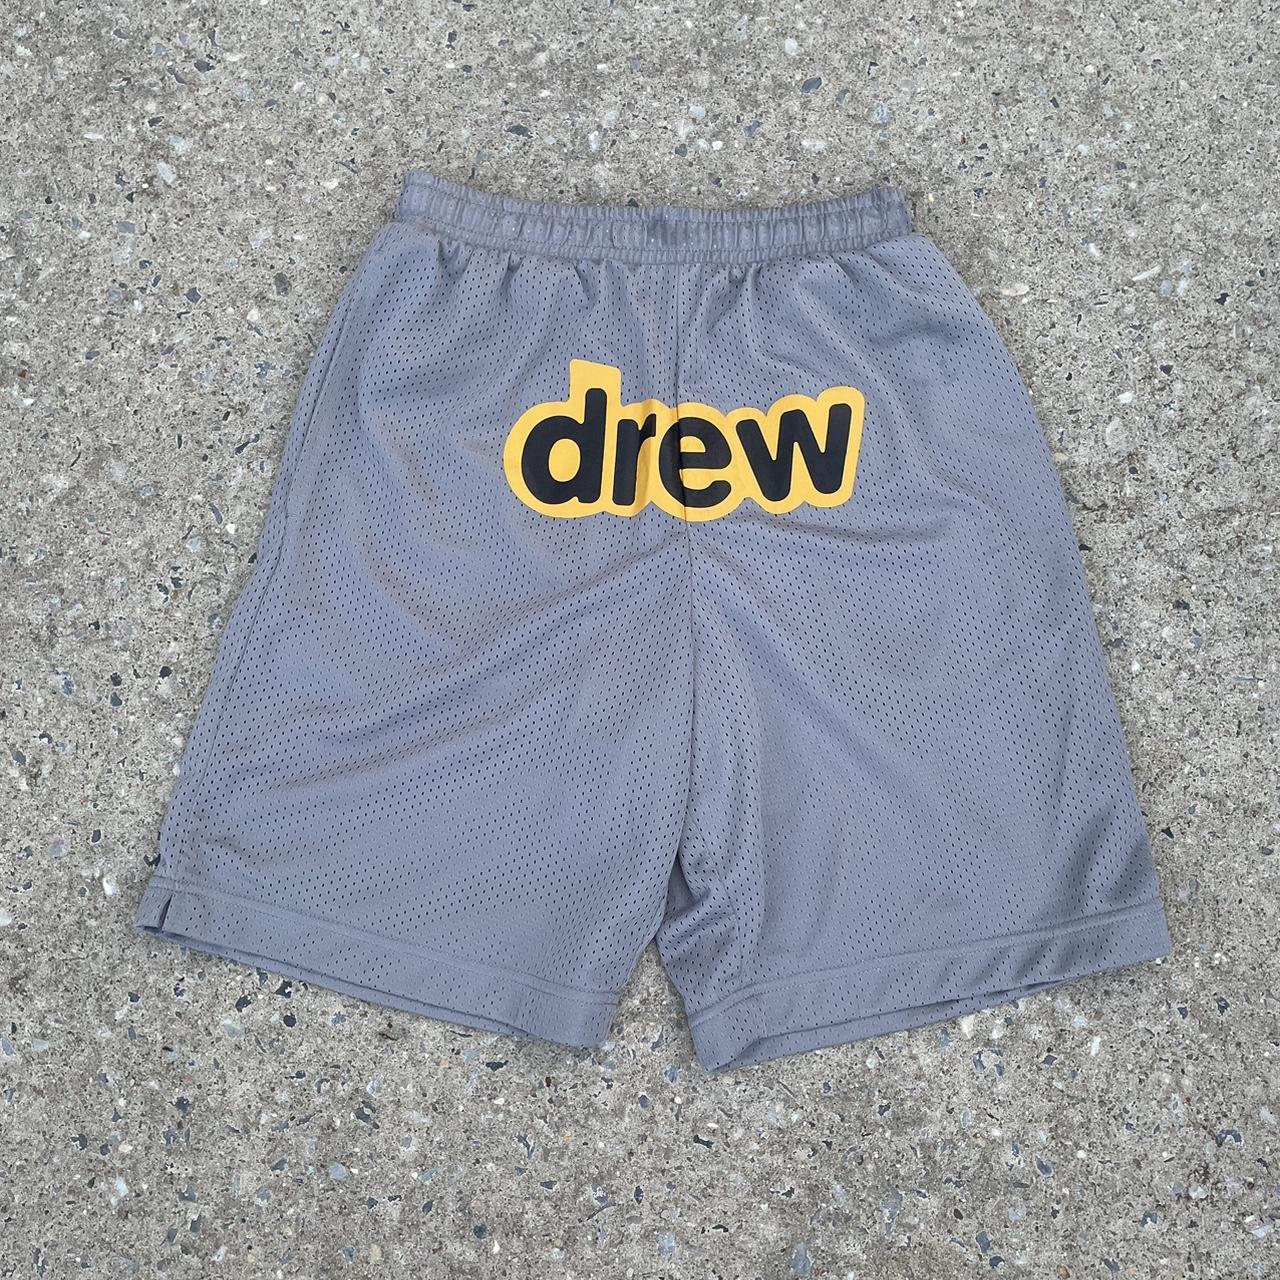 Authentic Justin Bieber “Drew House Shorts sz 36. - Depop